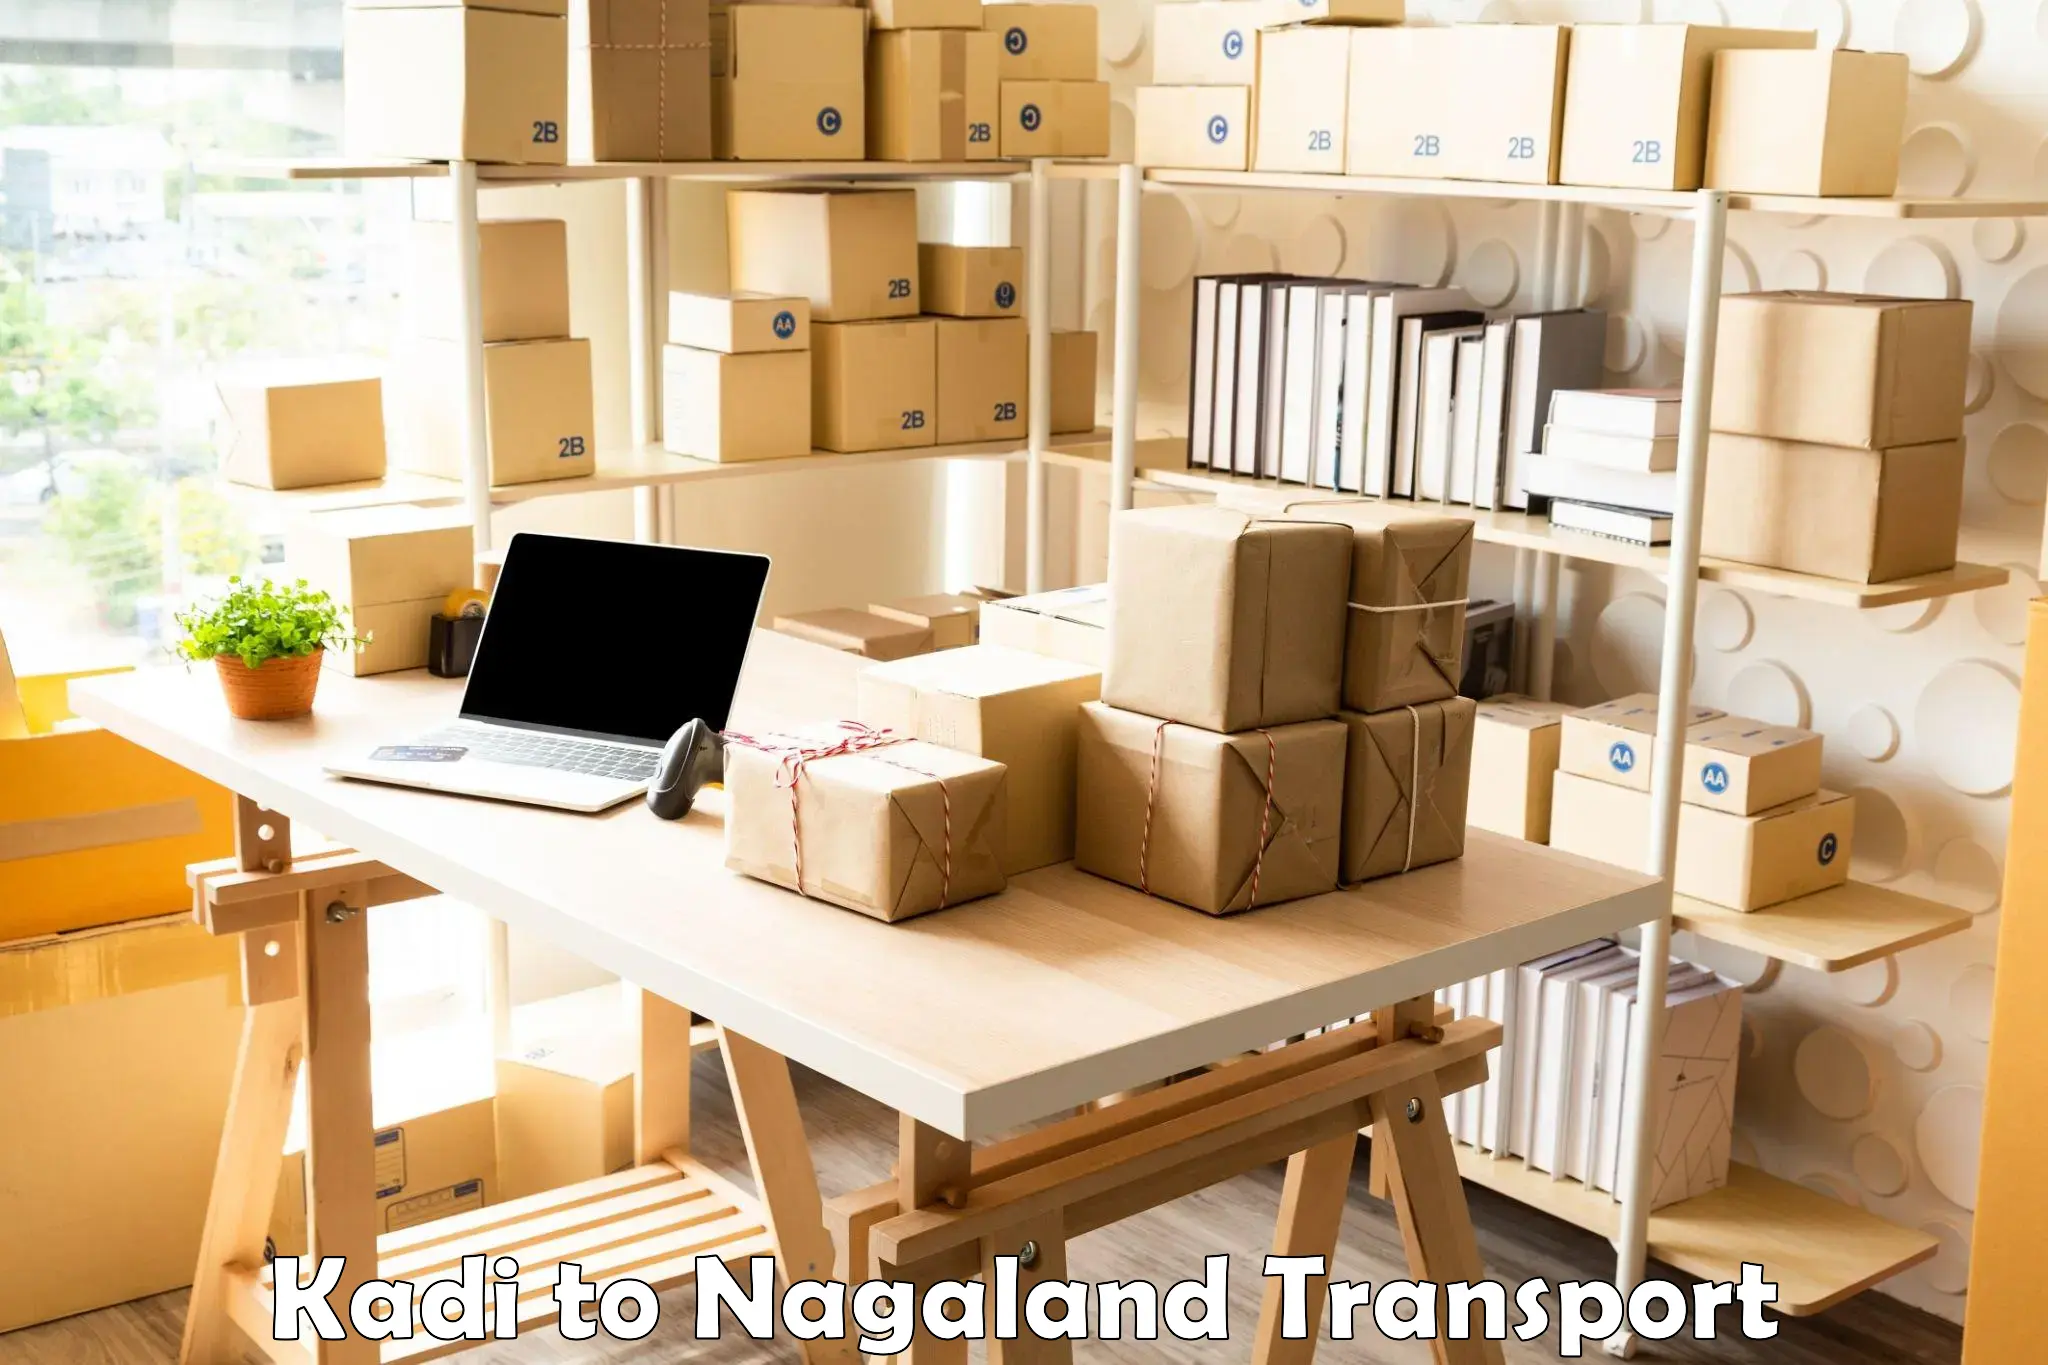 Express transport services Kadi to Nagaland